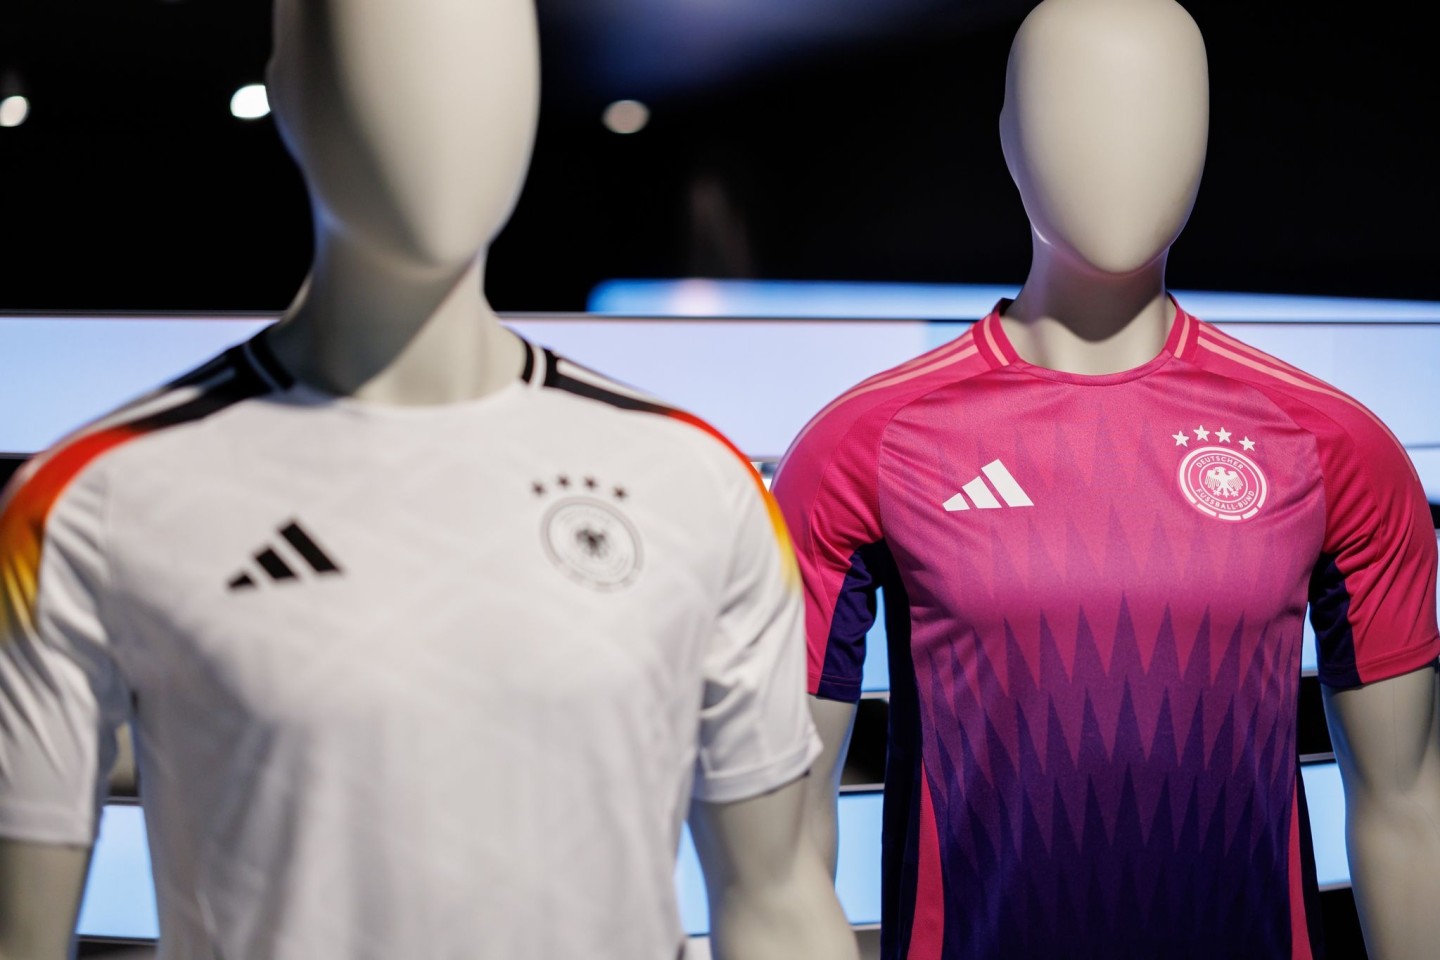 Wurde kontrovers diskutiert: die Farbwahl des neuen Pink und lilafarbenen Auswärtstrikots der deutschen Fußballnationalmannschaft (r).